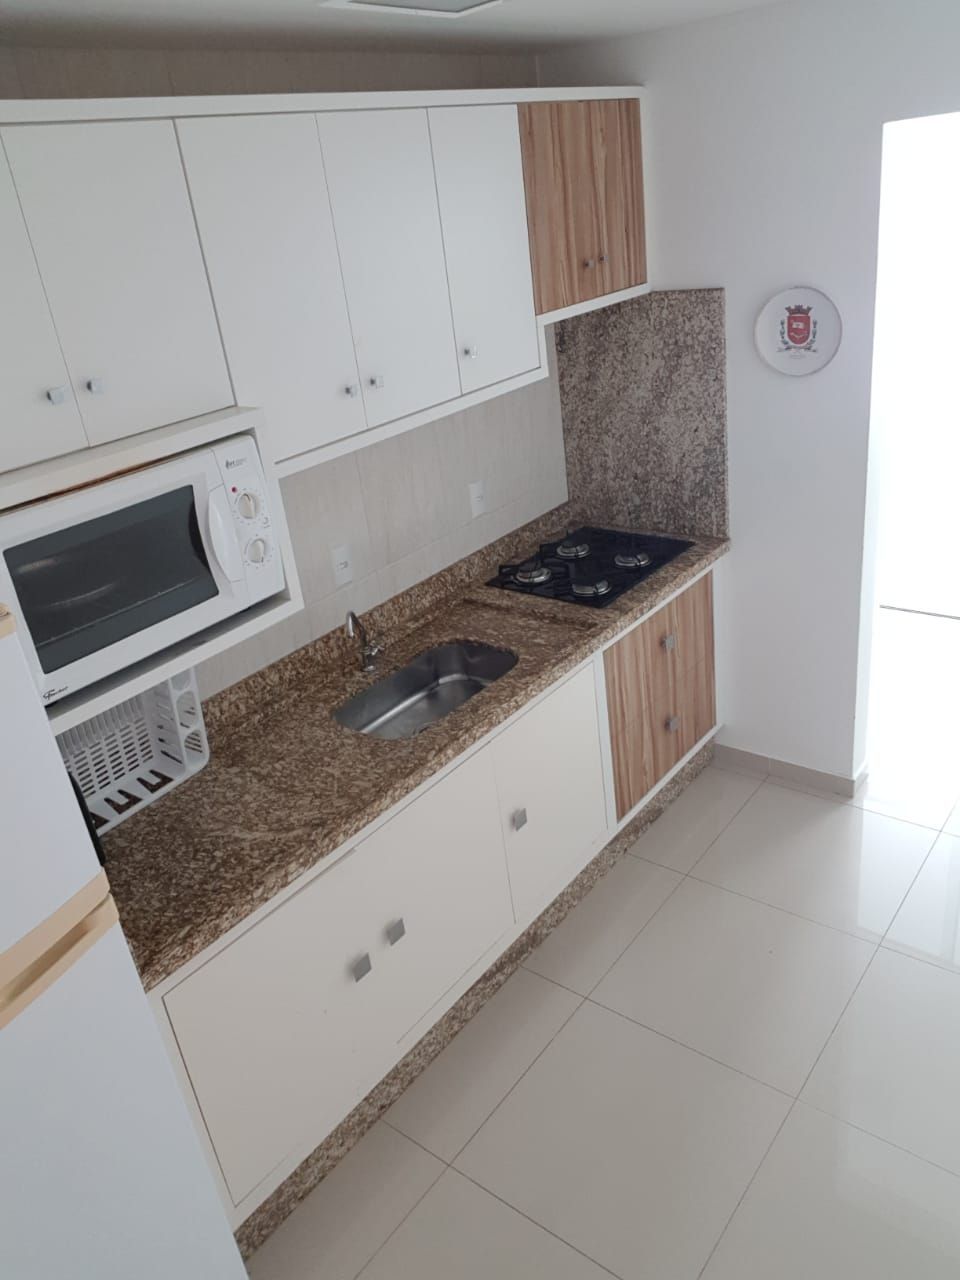 Apartamento com 2 Dormitórios para alugar, 70 m² por R$ 180,00